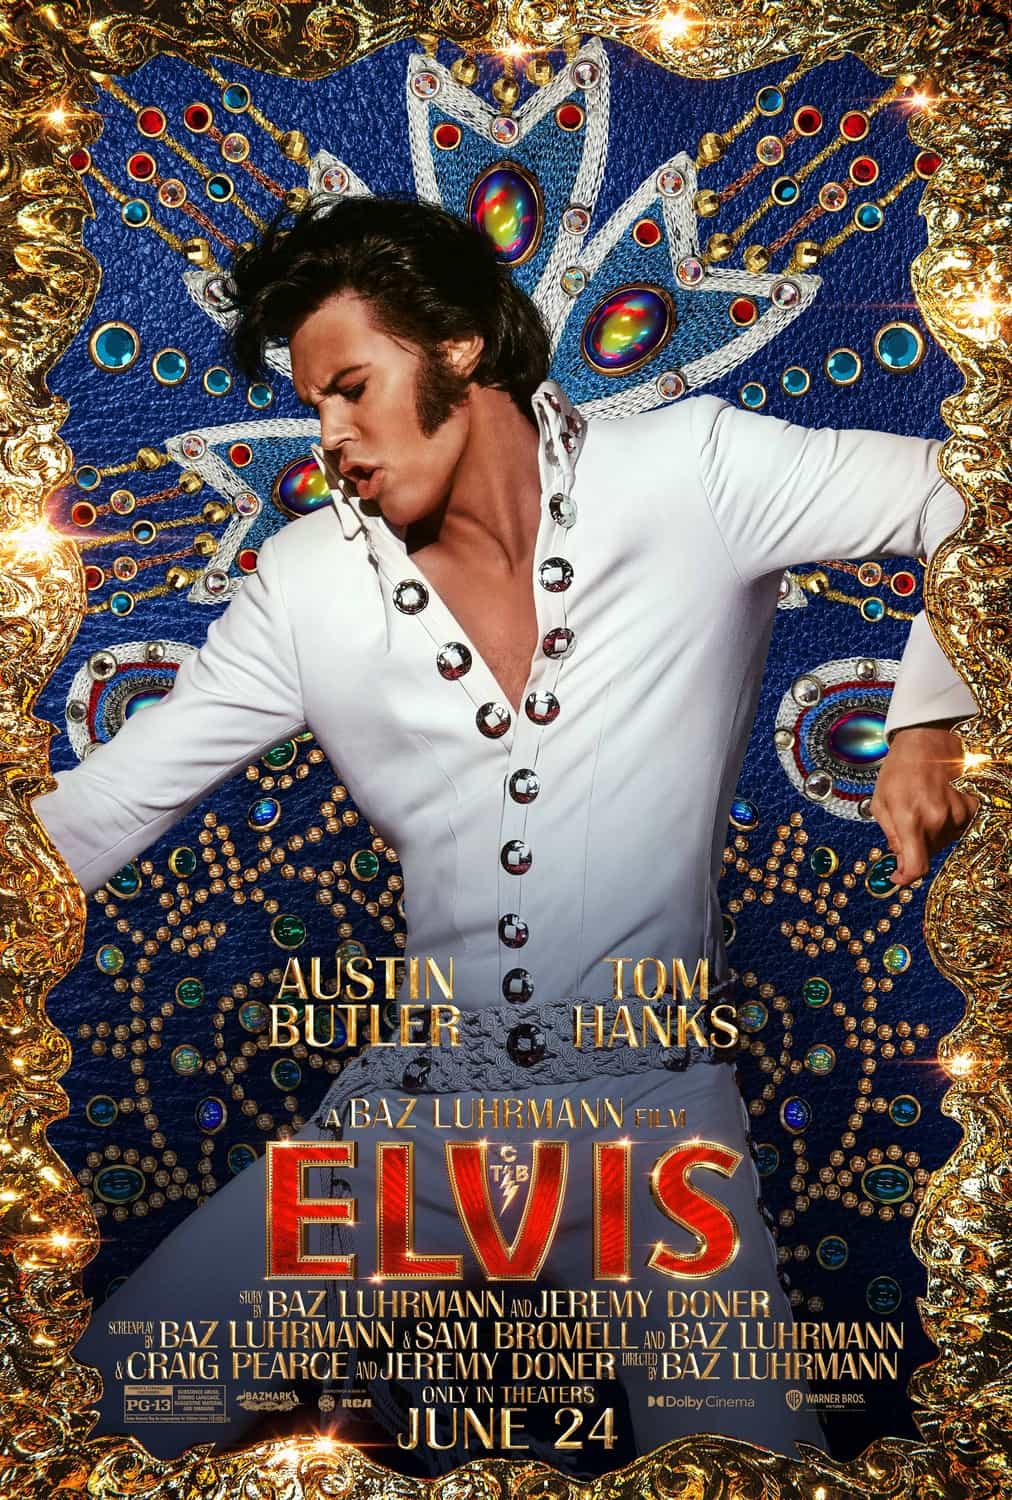 New poster released for Elvis starring Austin Butler - movie UK release date 24th June 2022 #elvis